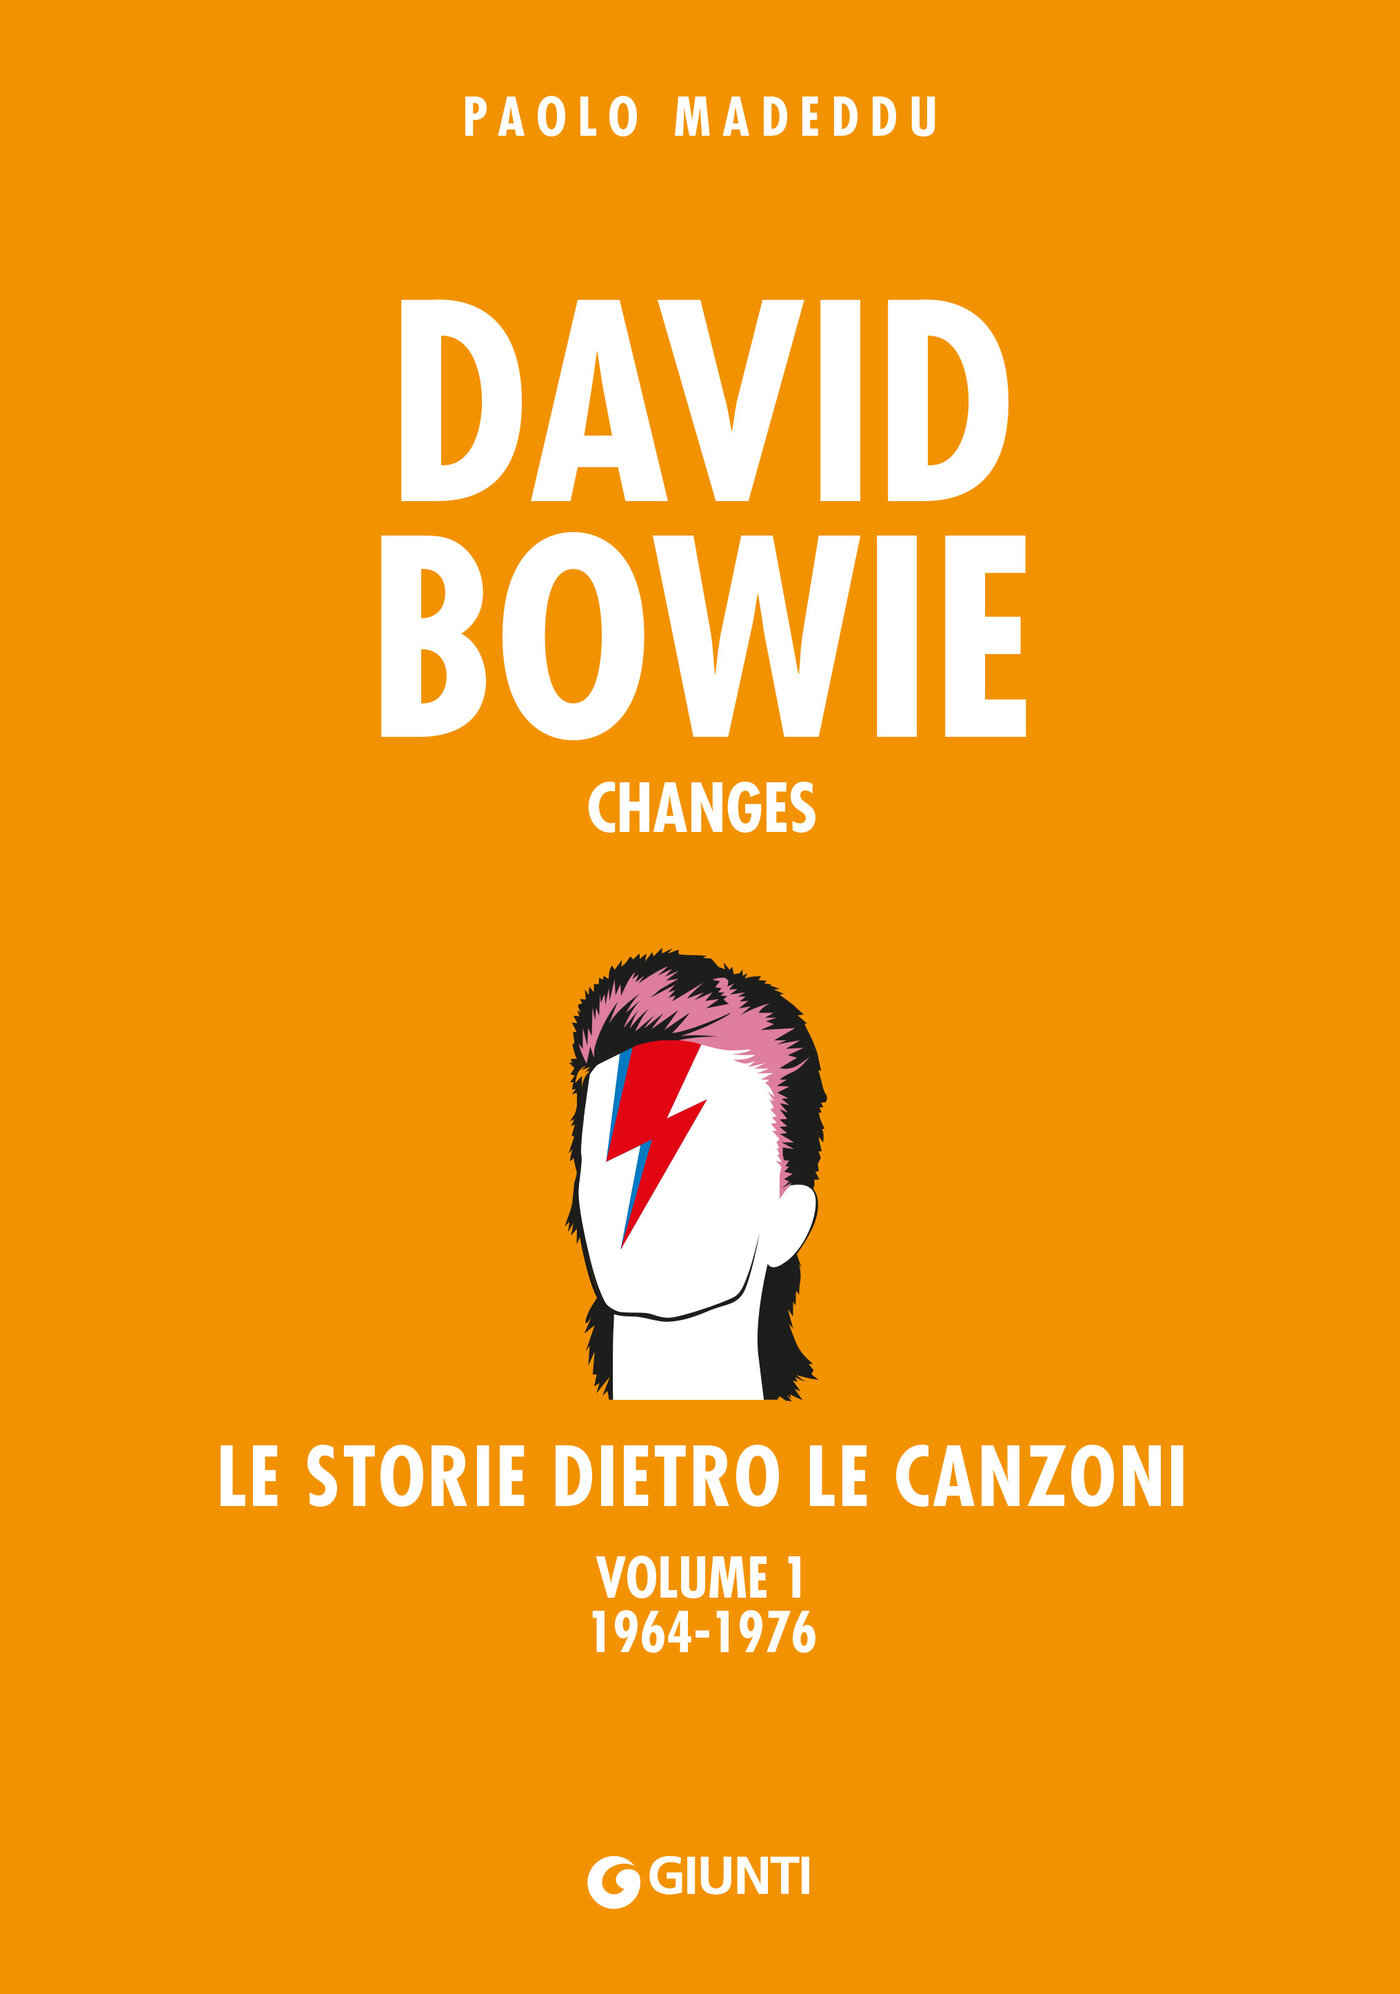 Libri Paolo Madeddu - David Bowie. Changes. Le Storie Dietro Le Canzoni Vol 01 NUOVO SIGILLATO, EDIZIONE DEL 21/10/2020 SUBITO DISPONIBILE